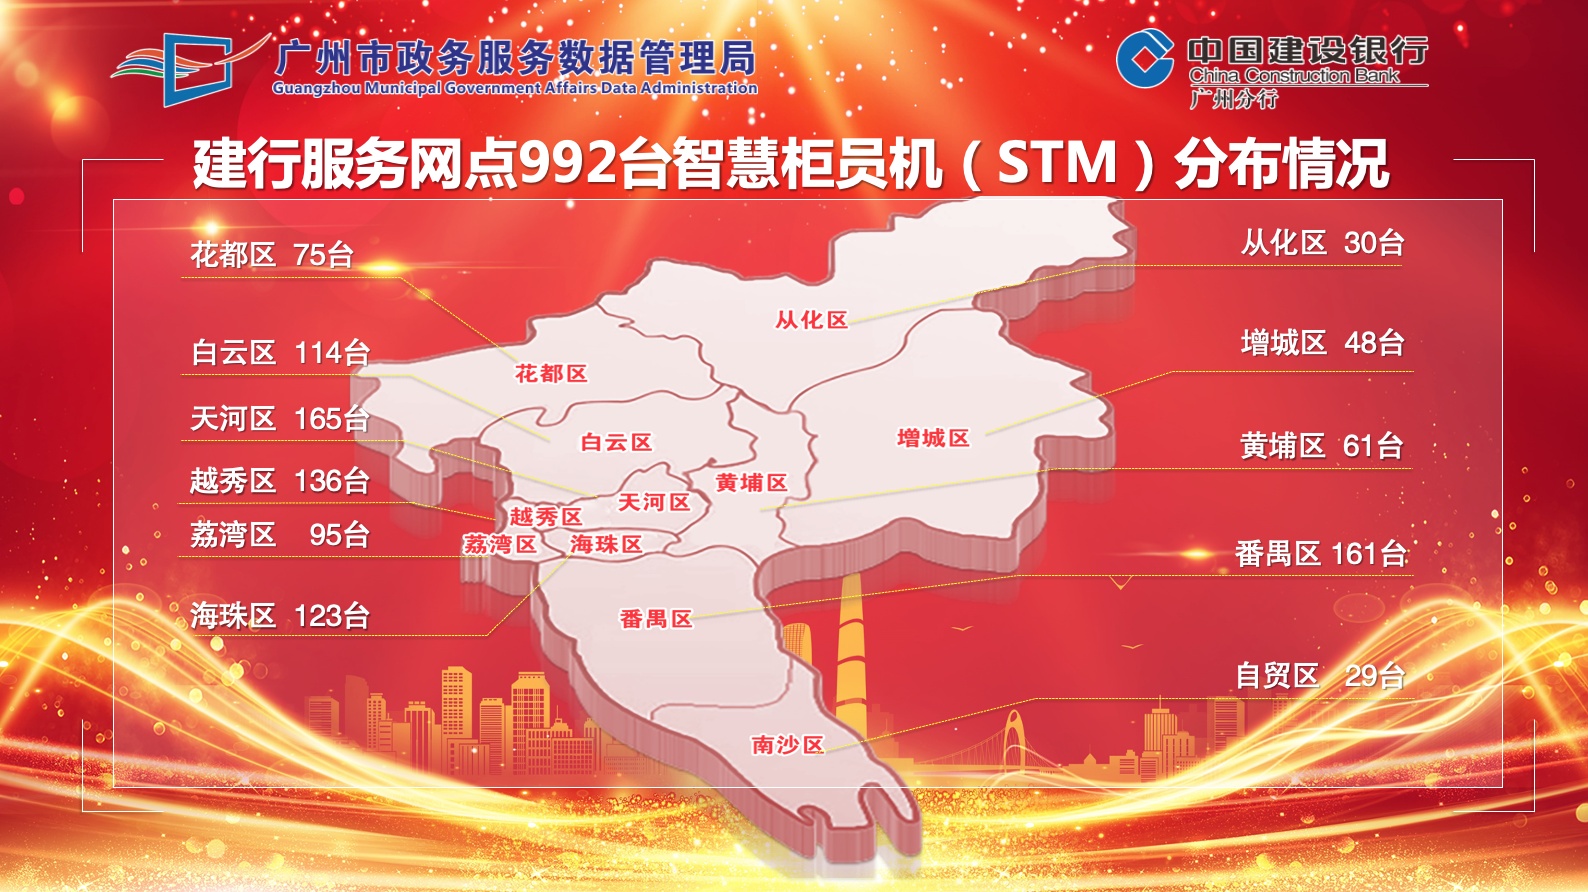  政务服务进驻全市近千台柜员机，123项高频服务家门口就能办！ 广州资讯